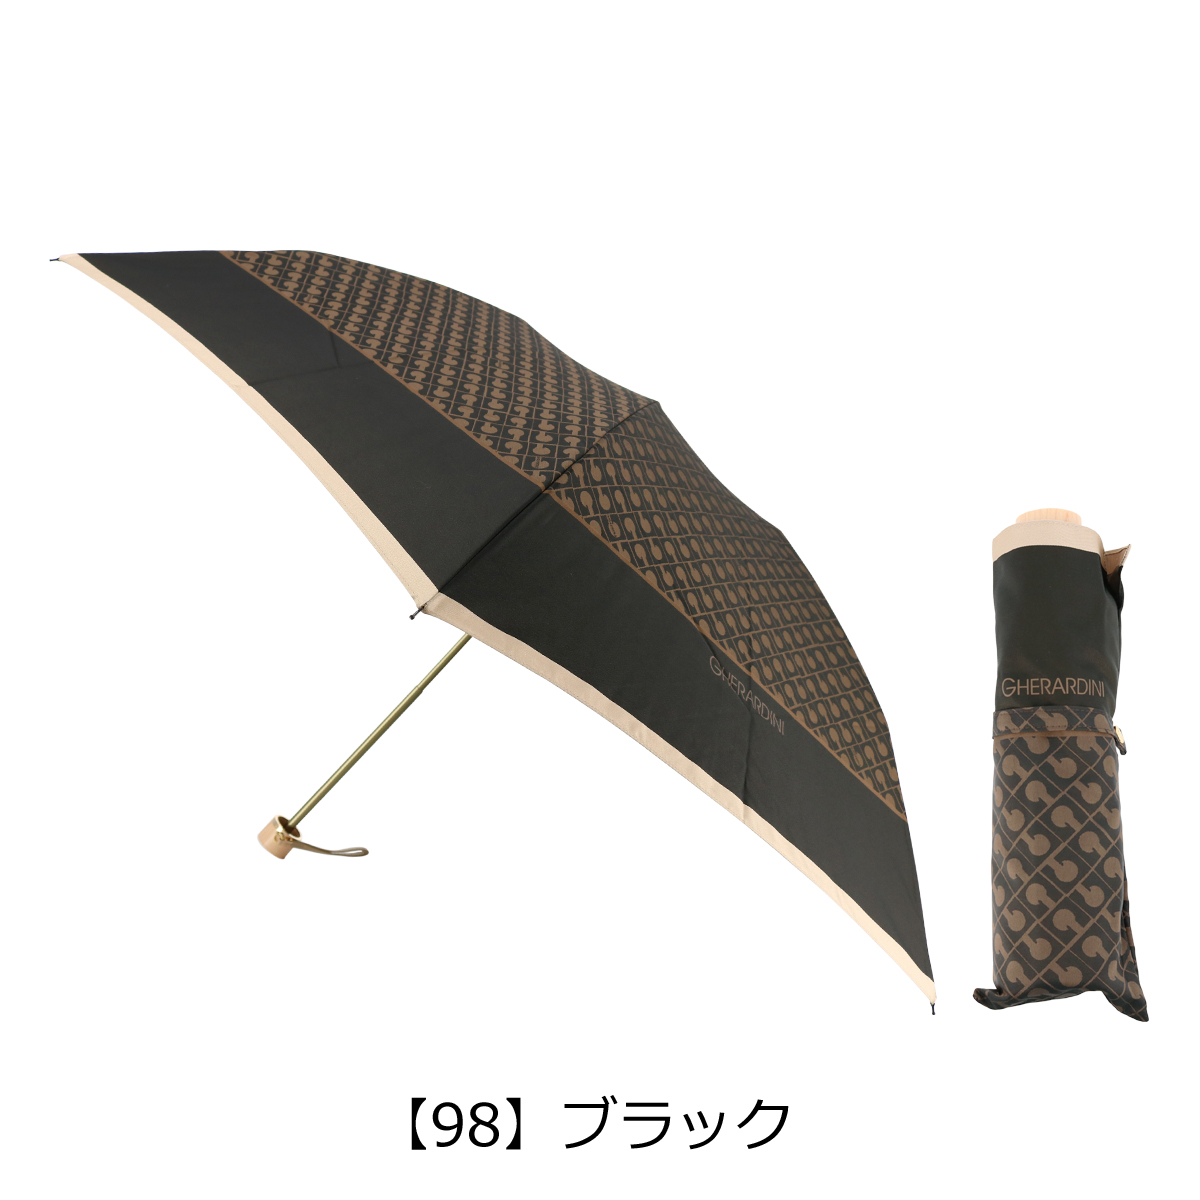 ゲラルディーニ 折りたたみ傘 レディース 1GD 17001-01 日本製 GHERARDINI 雨傘 ブランド 90-99cm